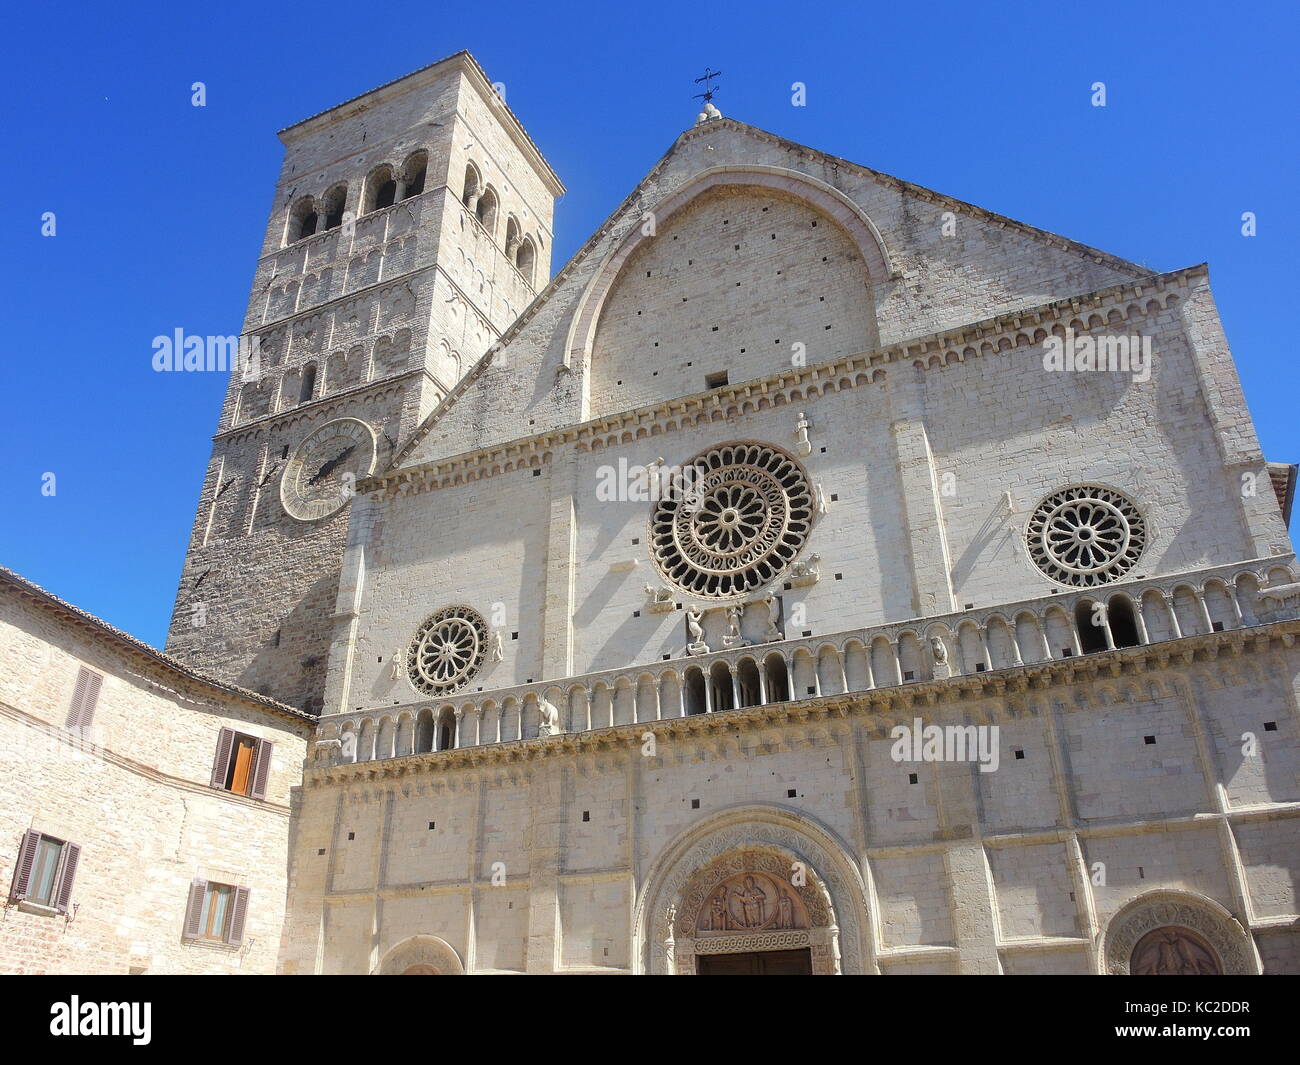 Assisi, Italia, una delle più belle piccole città d'Italia. la facciata della cattedrale di San Rufino Foto Stock